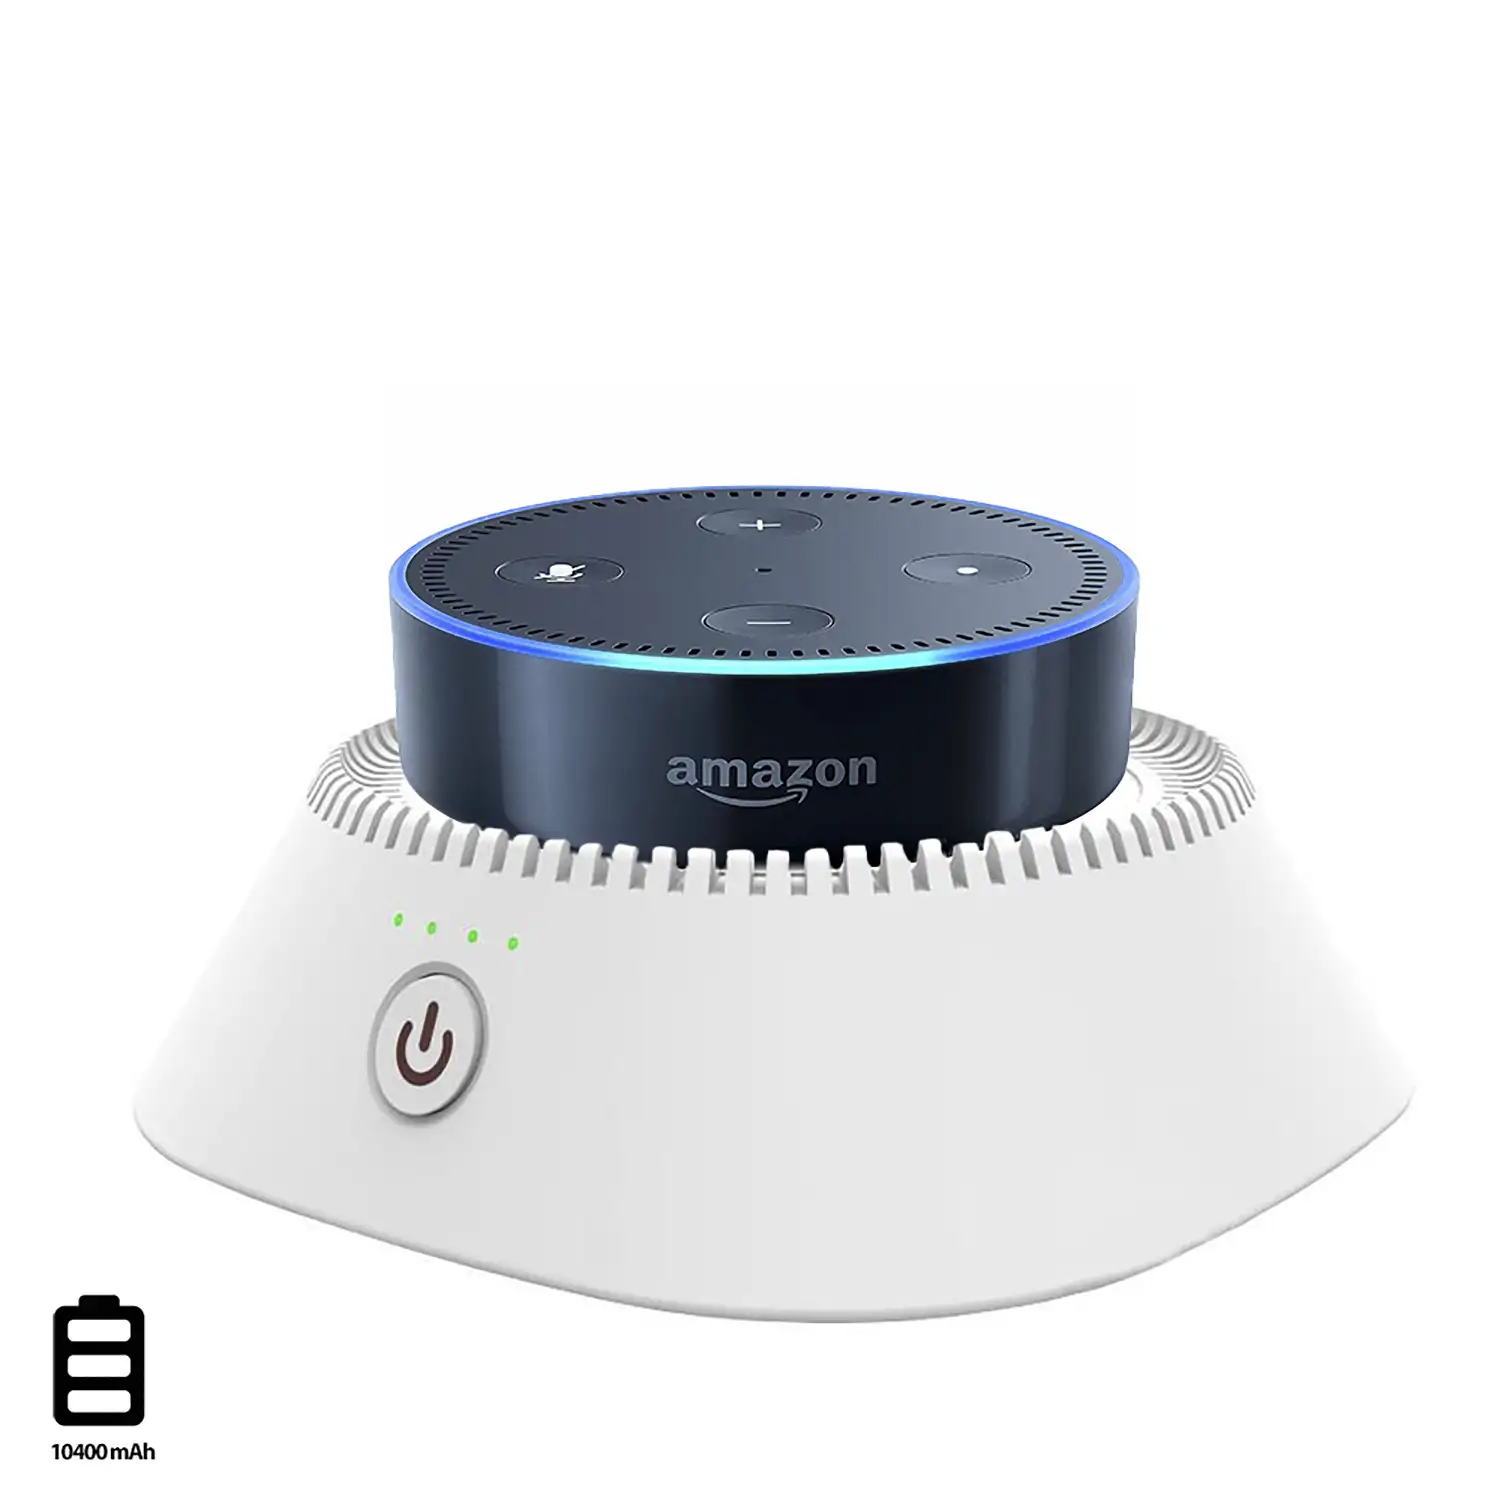 Powerbank de 10400mAh con soporte para Amazon Echo Dot (Gen 2)